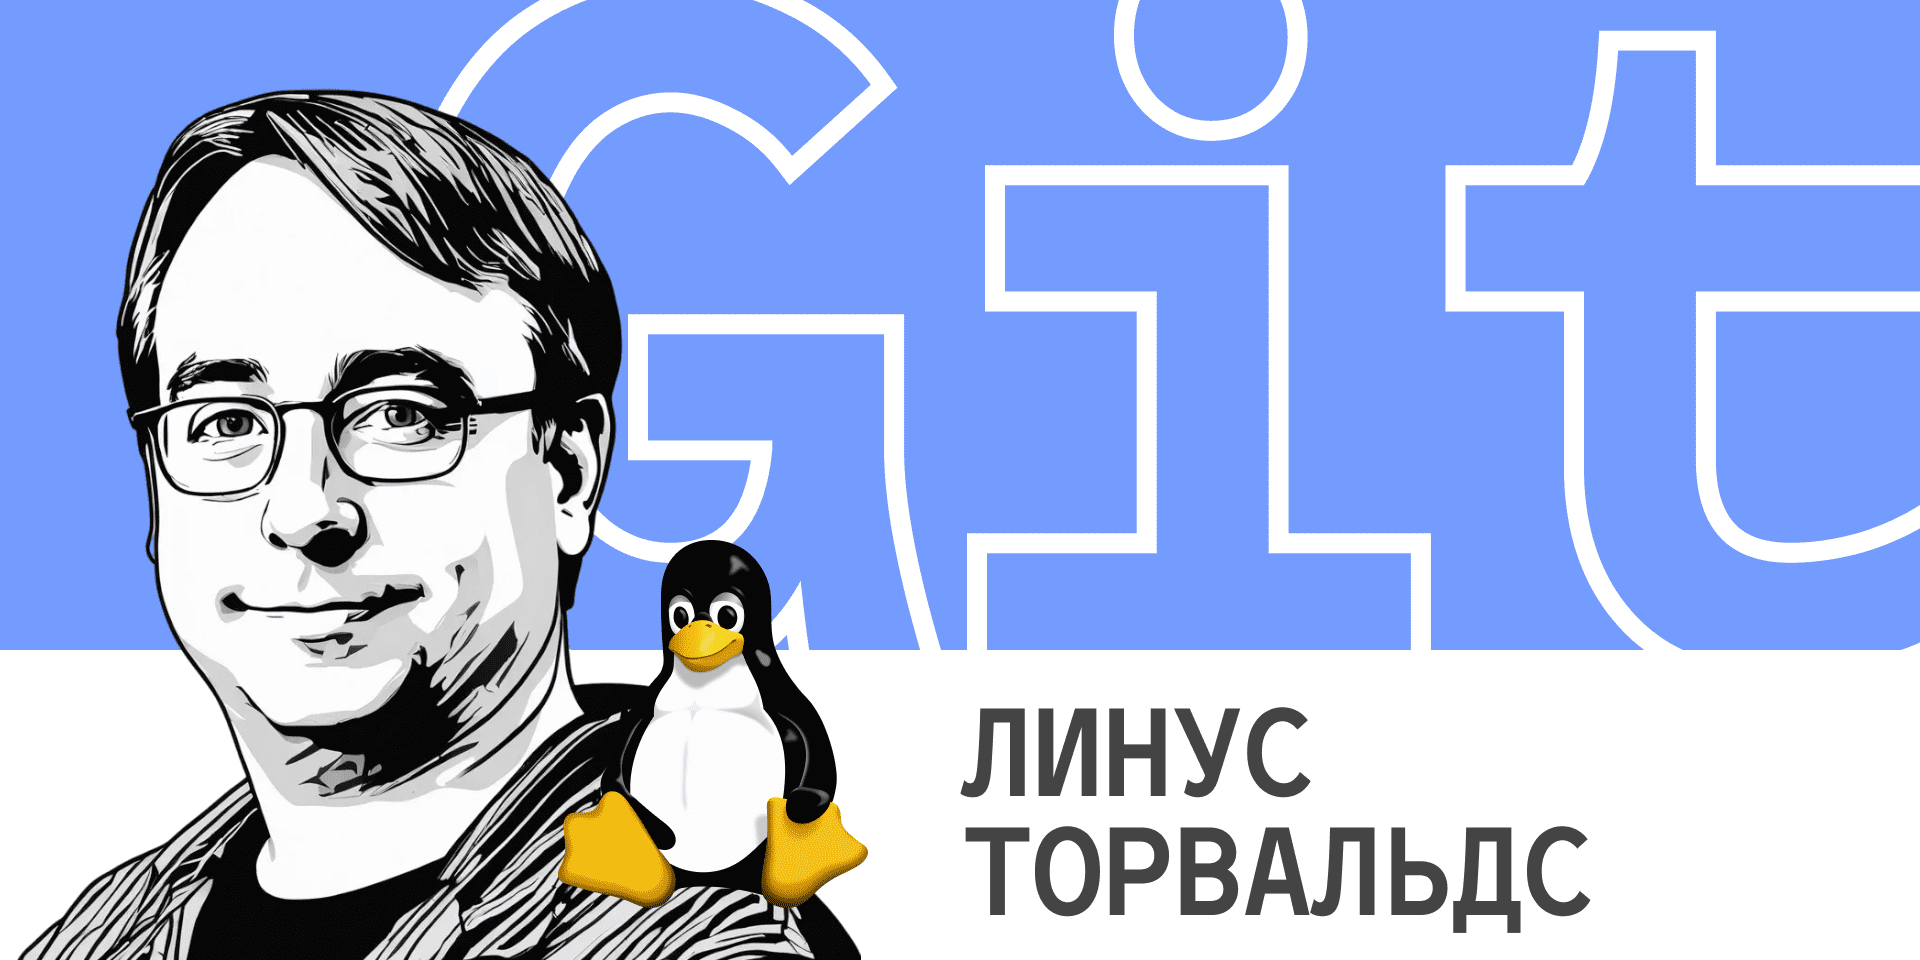 Линус Торвальдс. История создателя ОС Linux